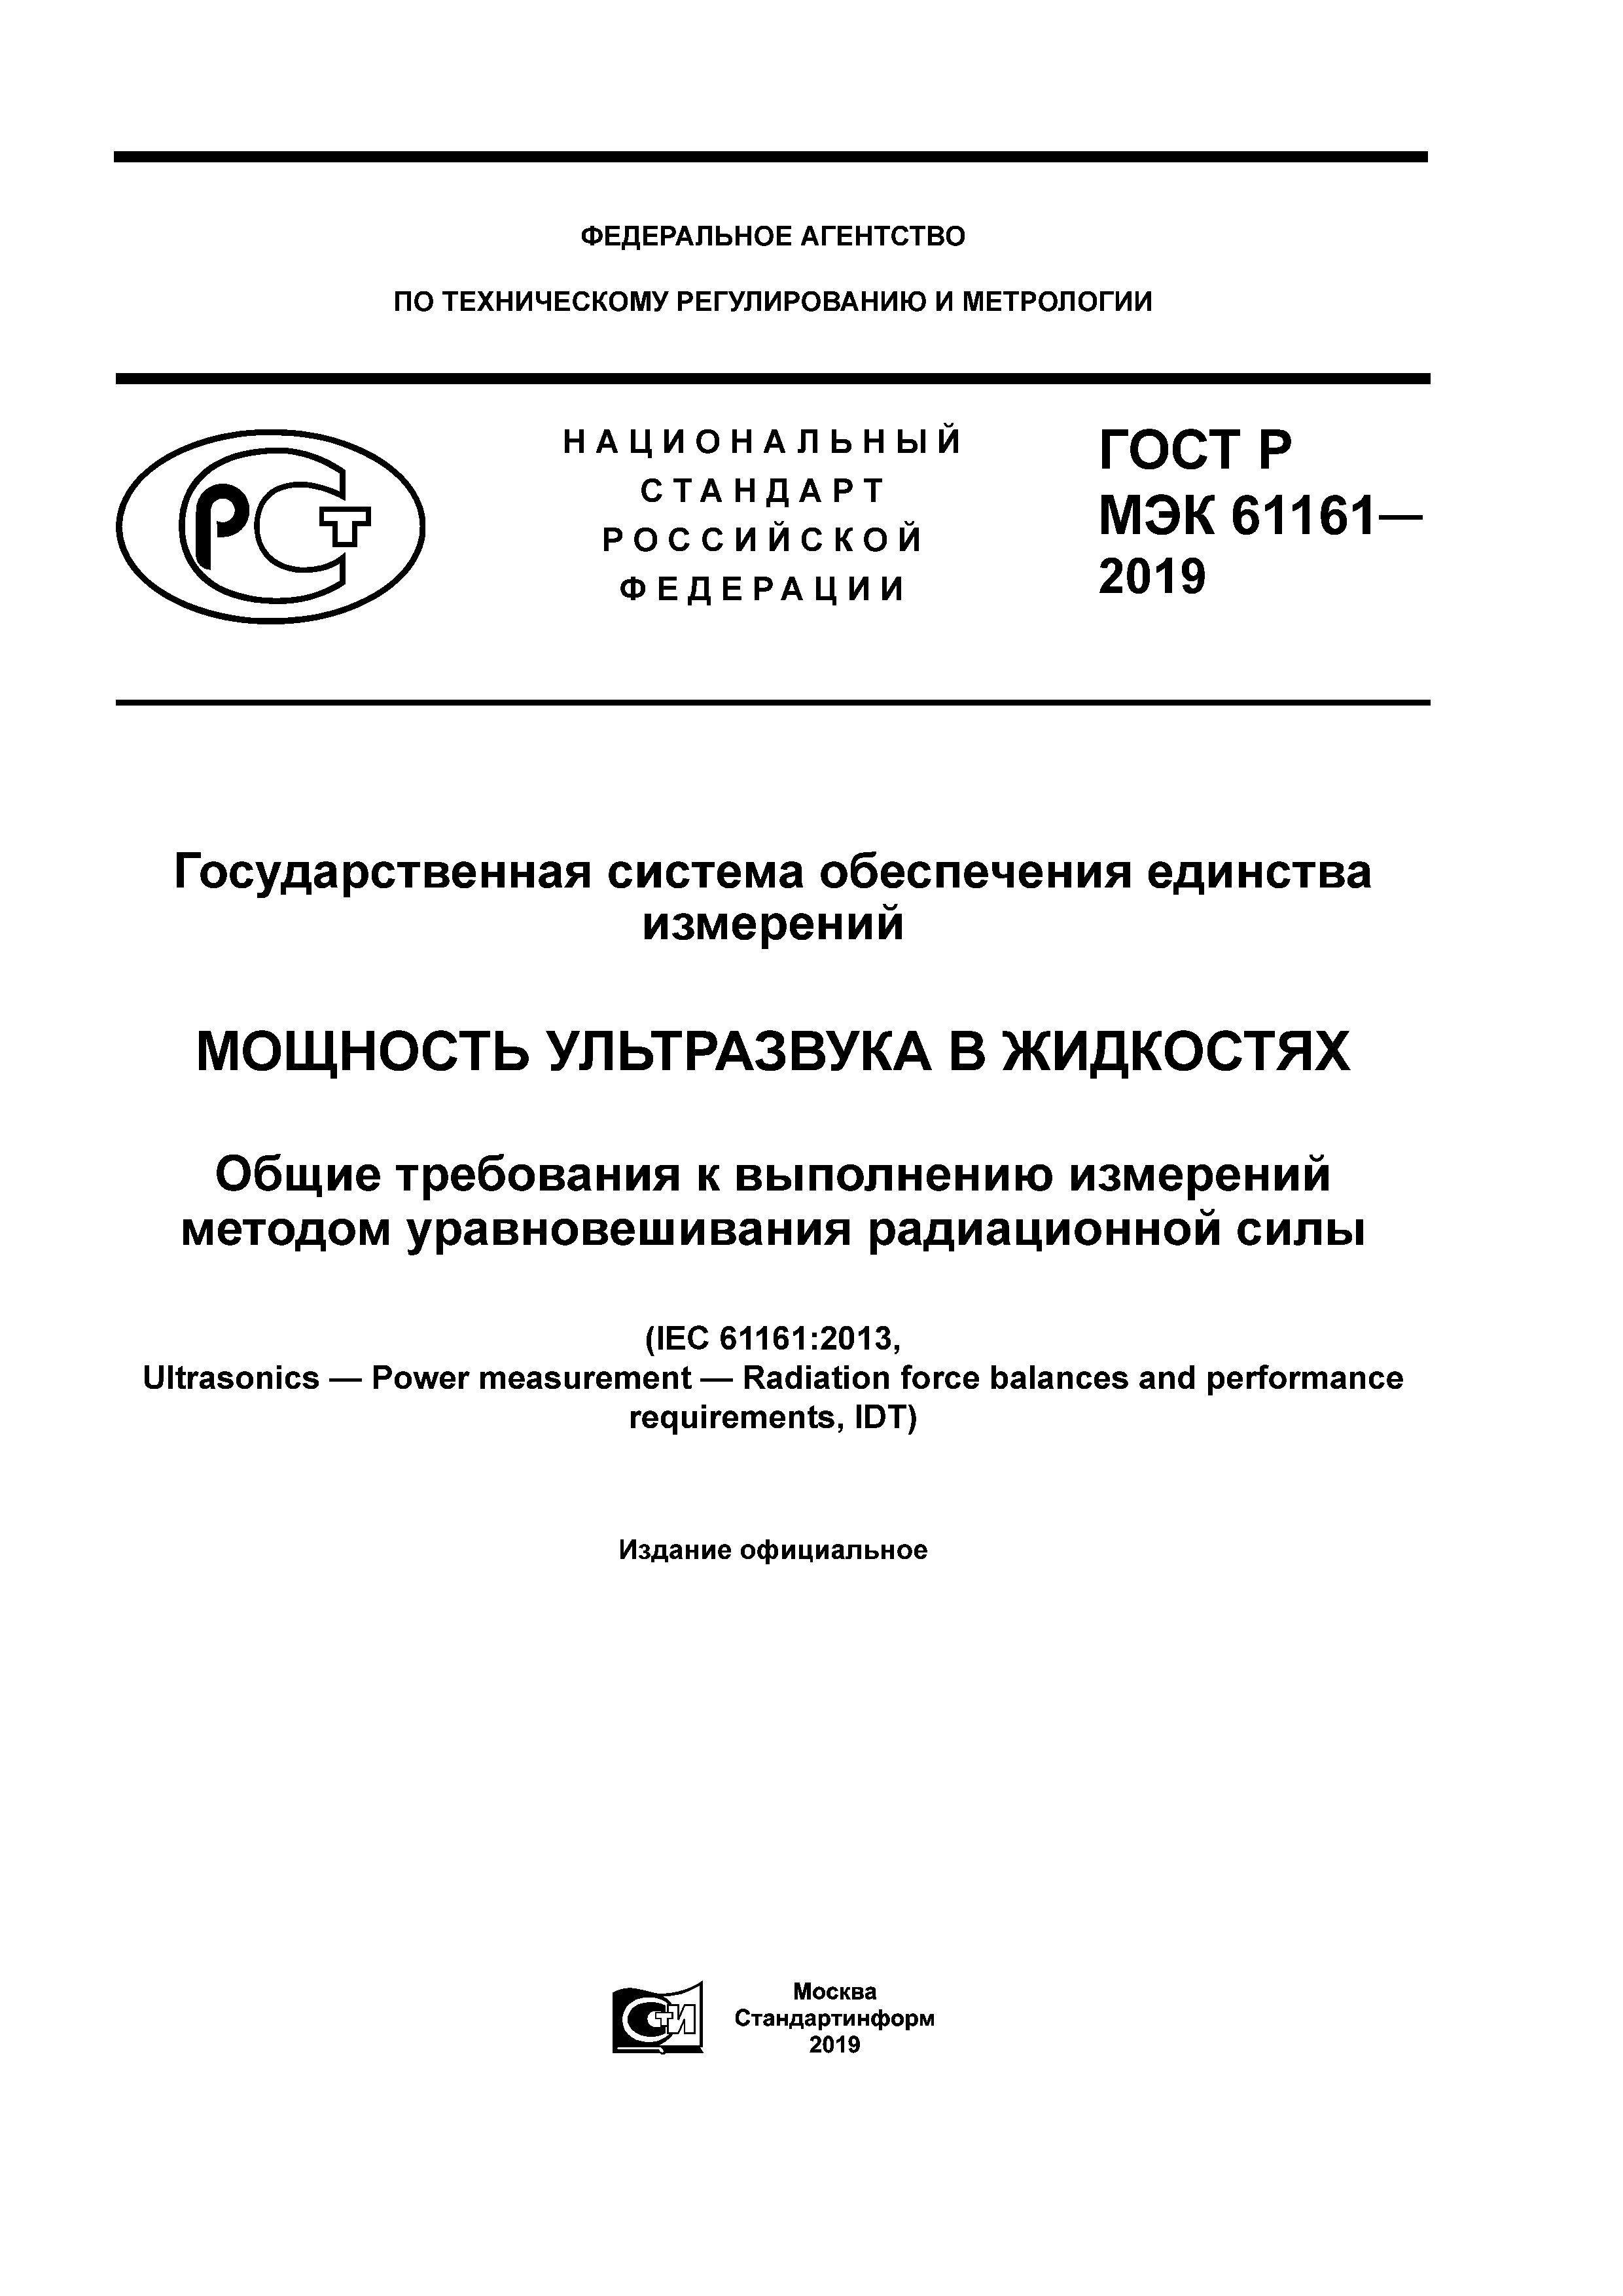 ГОСТ Р МЭК 61161-2019